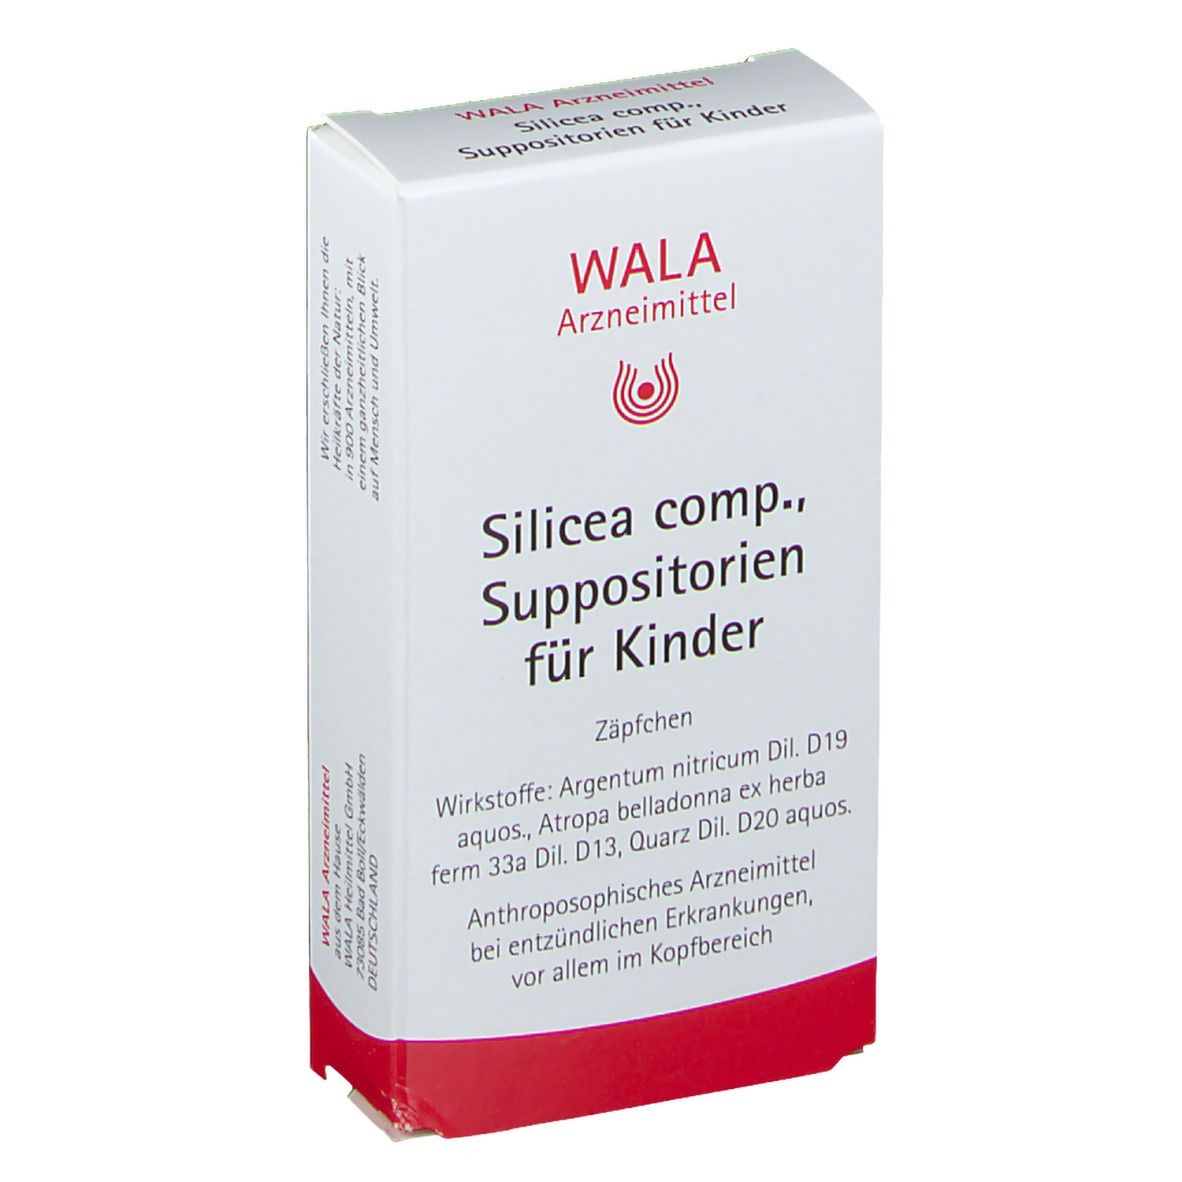 WALA® Silicea Comp. Suppositorien für Kinder